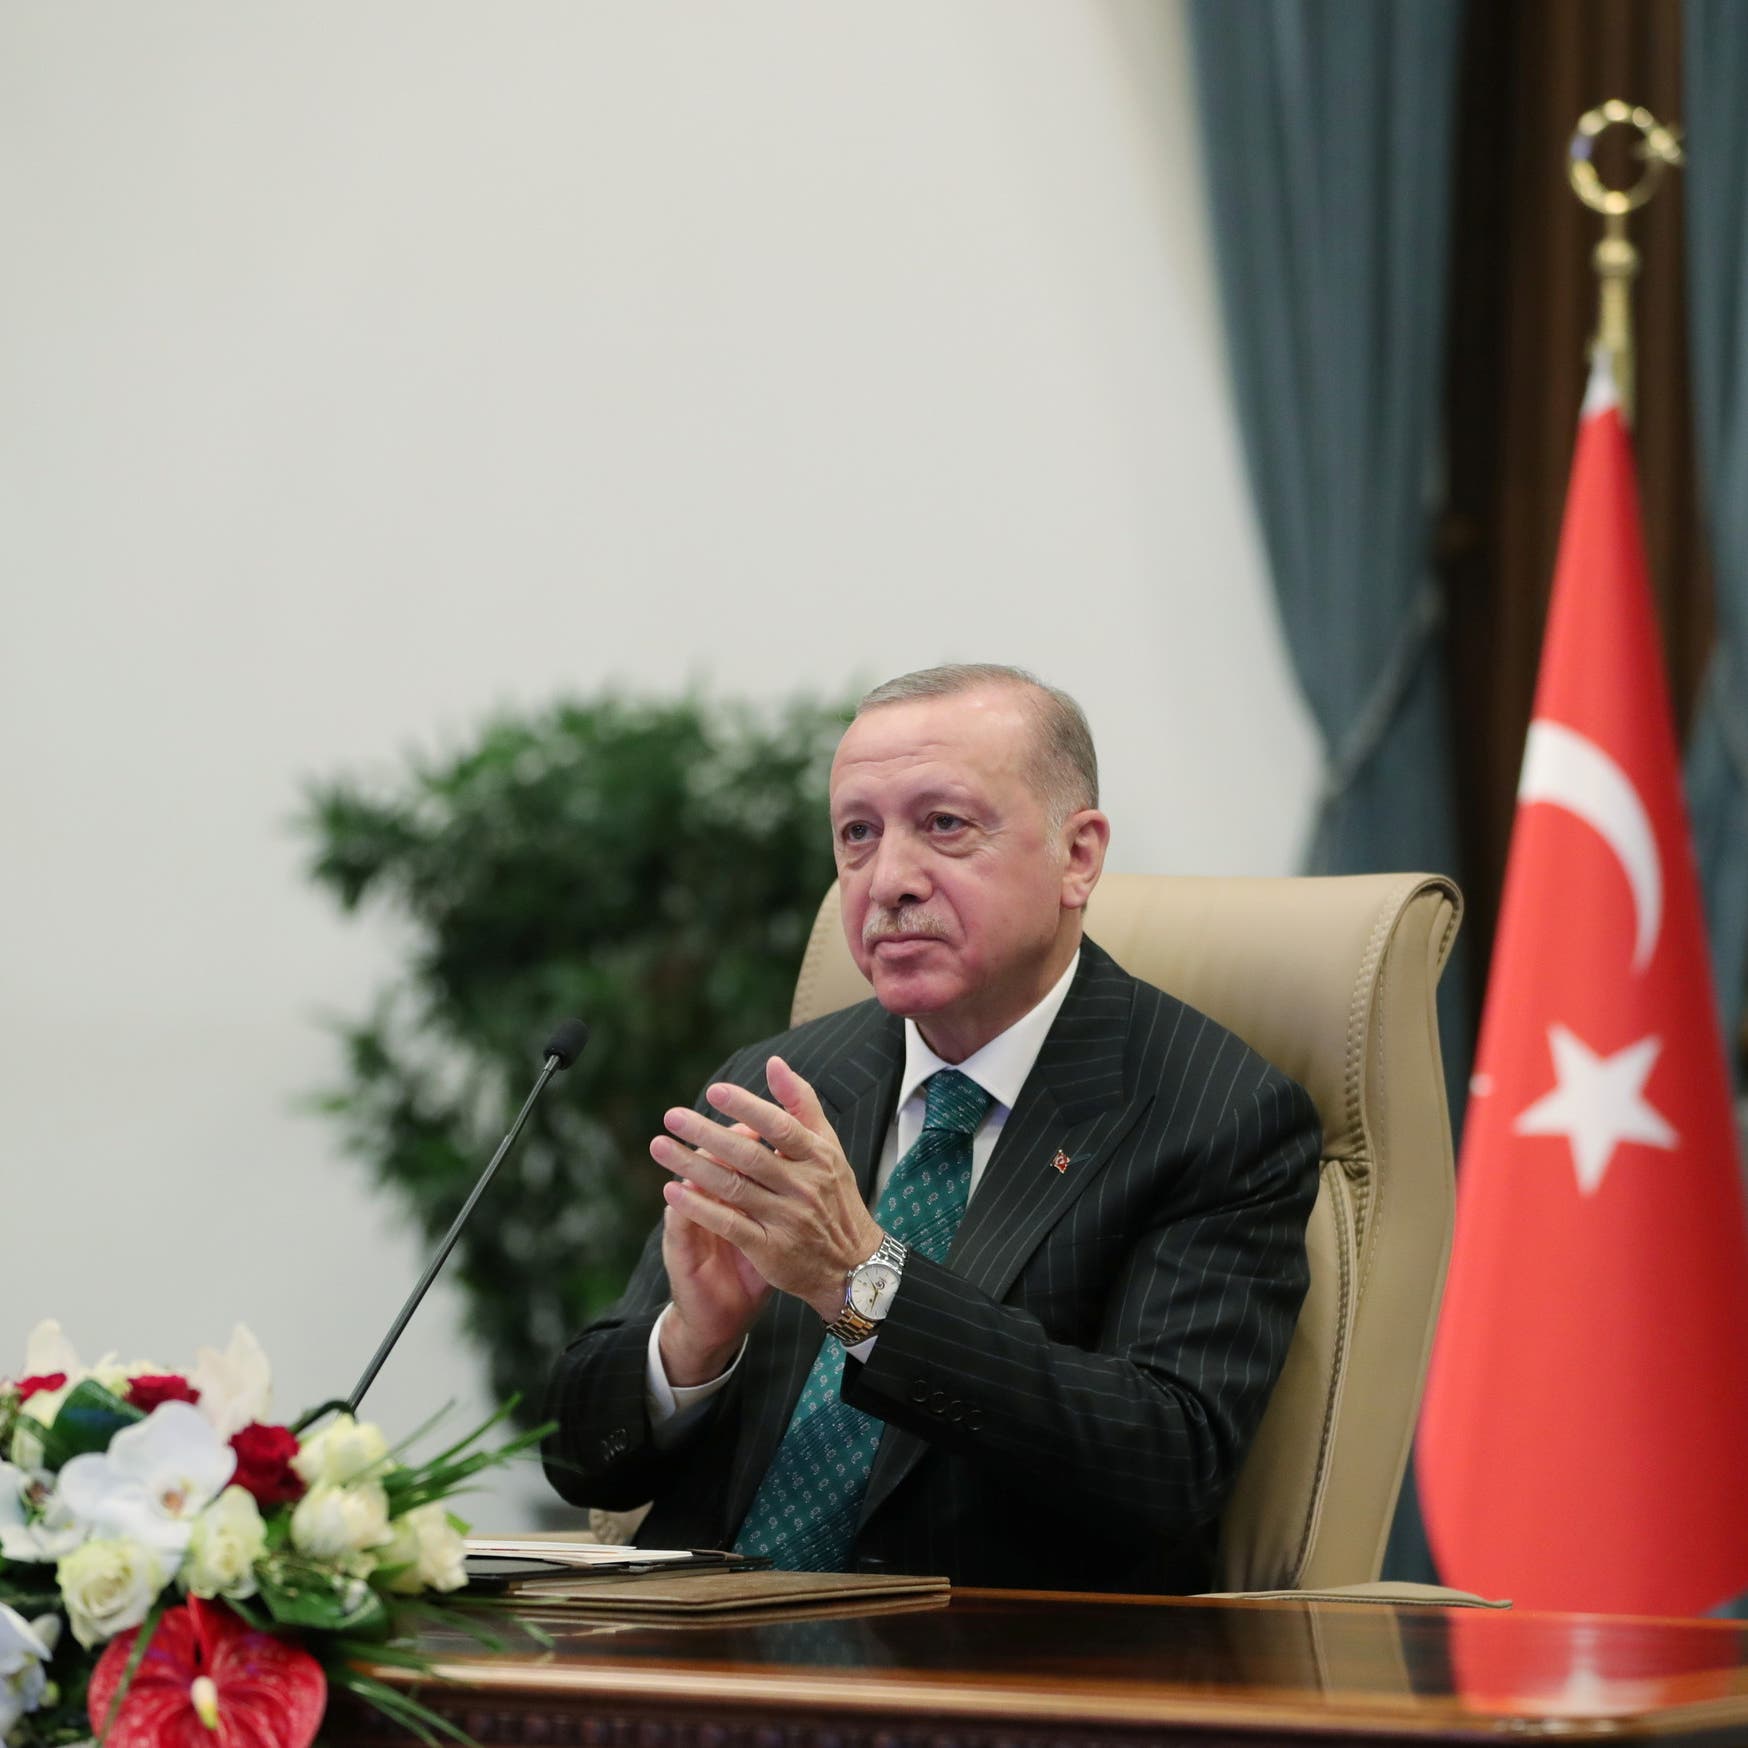 استطلاع جديد في تركيا يكشف تراجع شعبية الائتلاف الحاكم